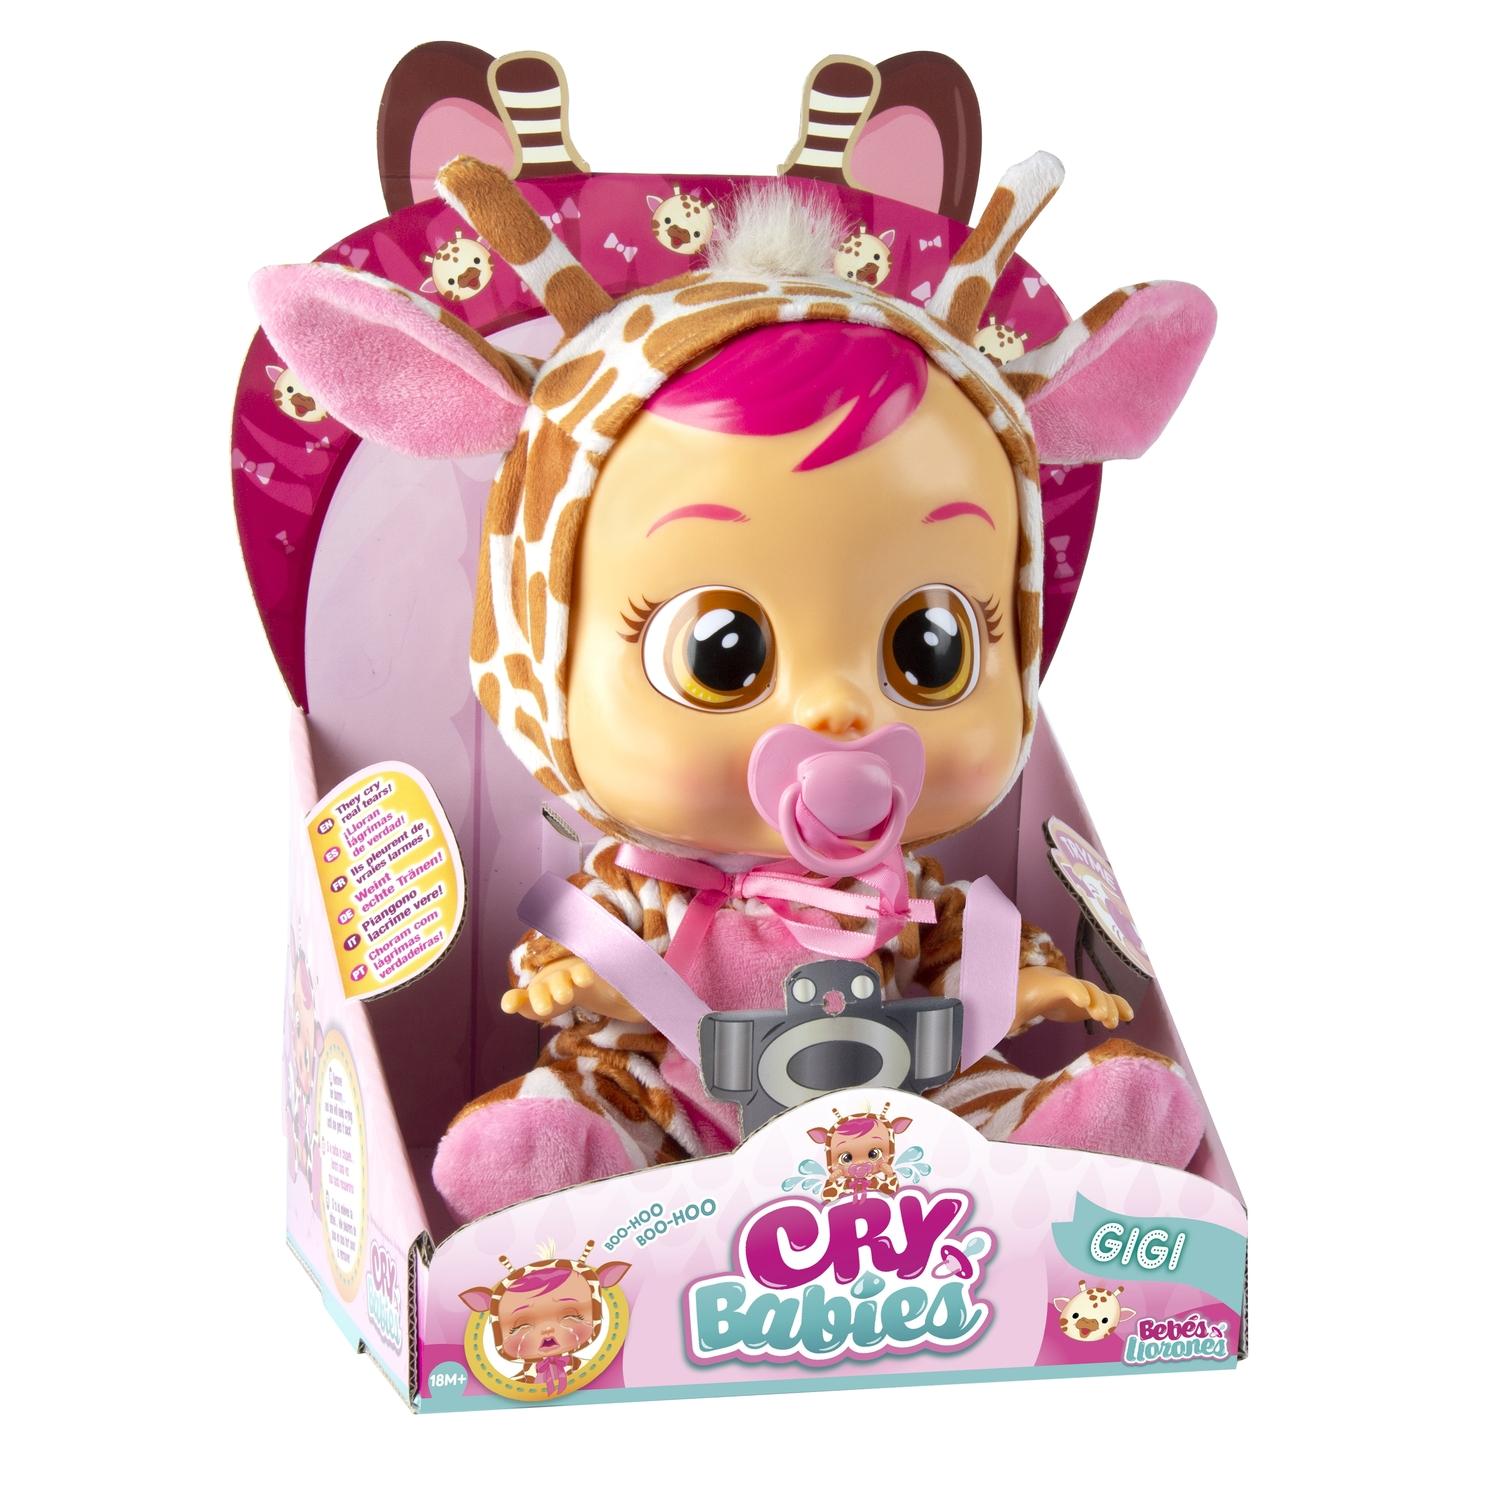 Imc toys. IMC Toys Cry Babies Gigi 90194 кукла. Куклы Cry Babies Жираф. Кукла IMC Toys Cry Babies tutti Frutti, Mori.